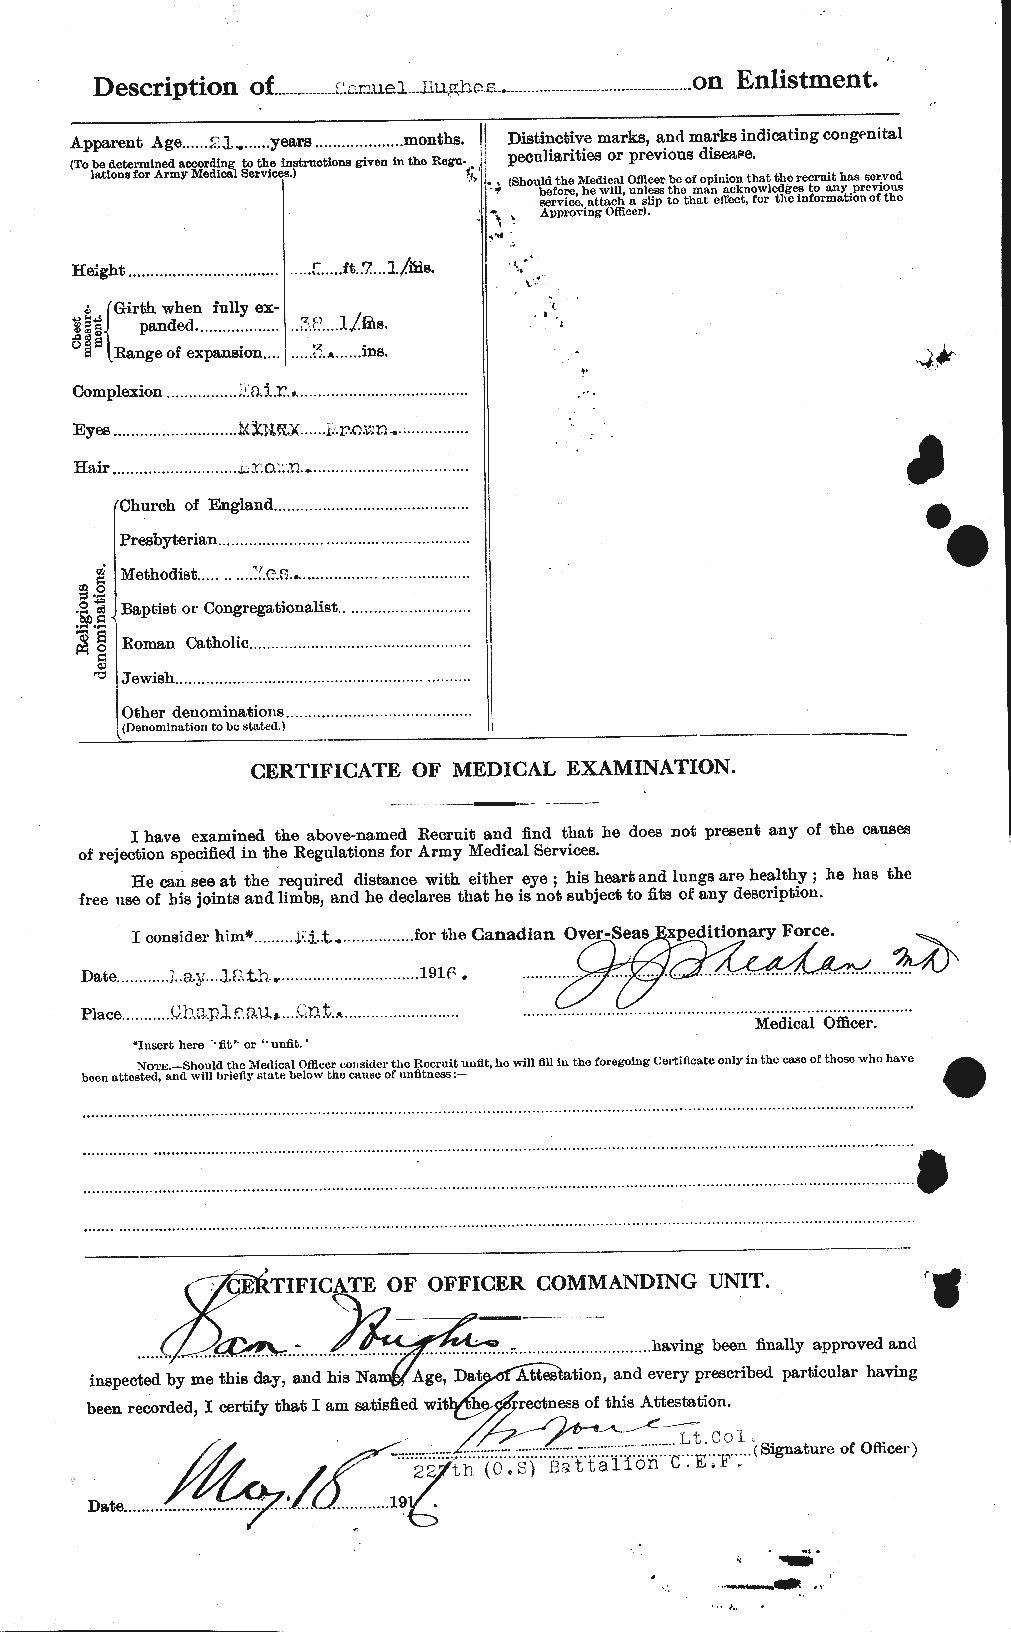 Dossiers du Personnel de la Première Guerre mondiale - CEC 406637b